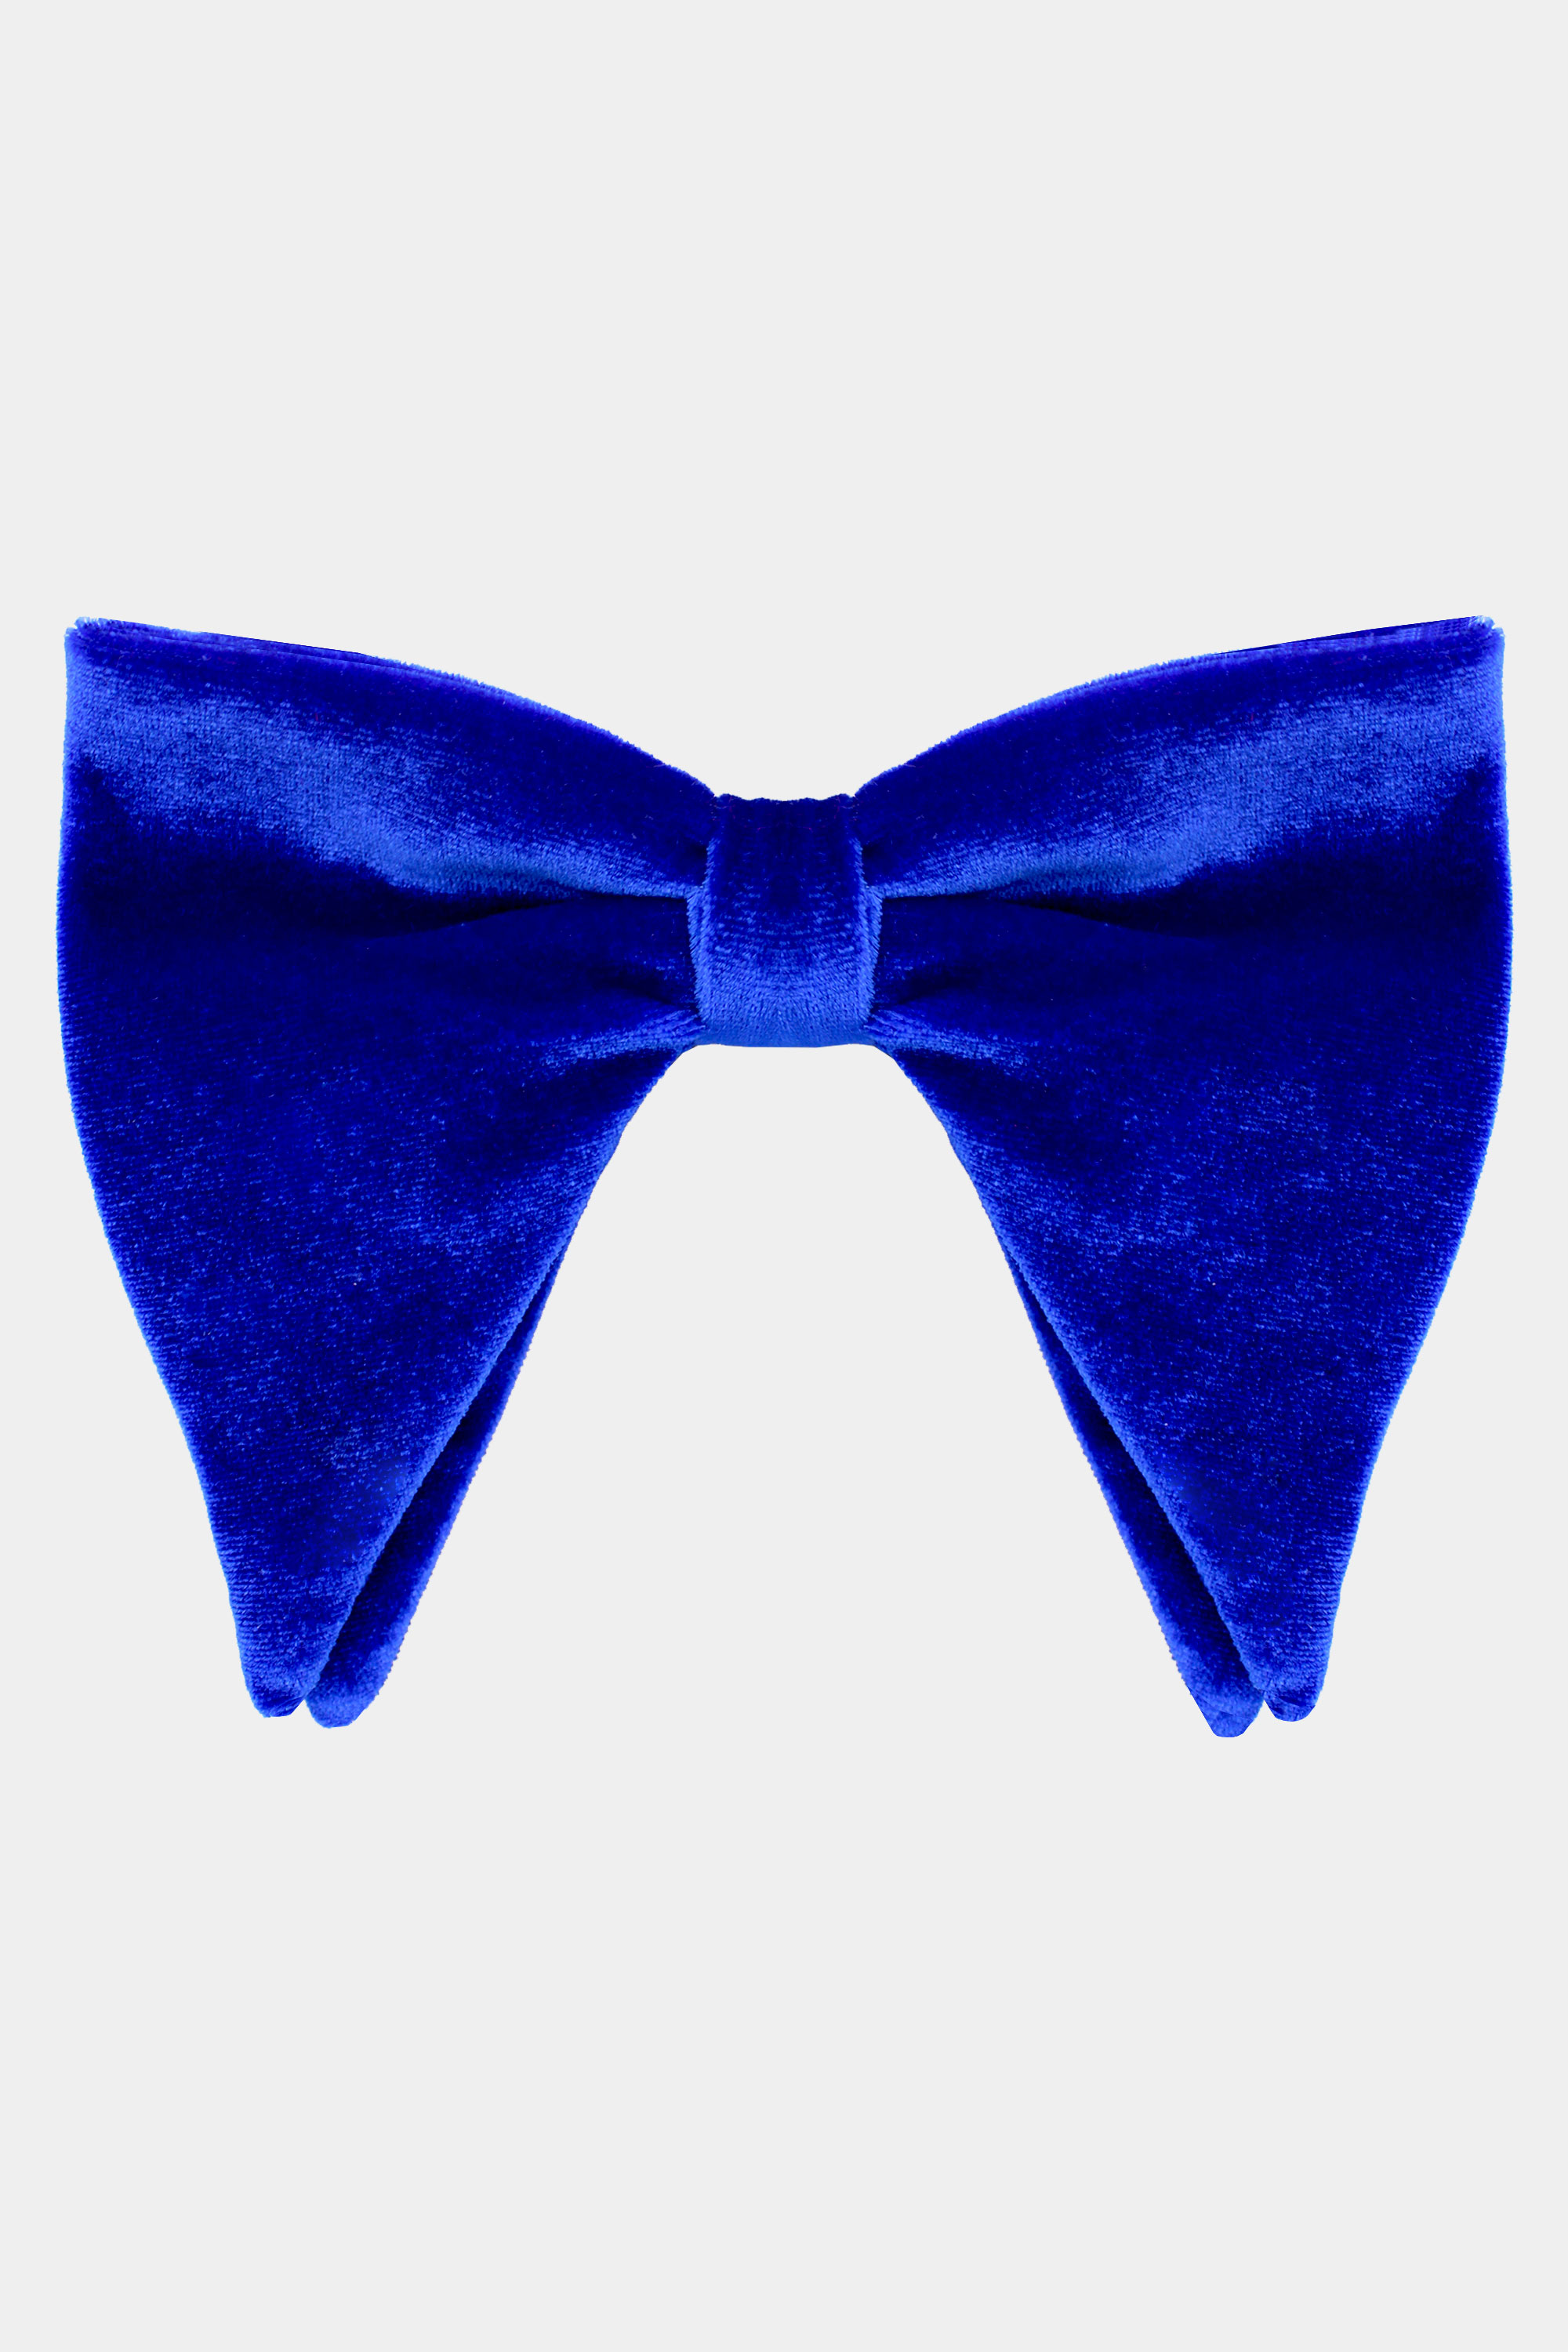 Gucci Velvet Bow Tie in Blue for Men